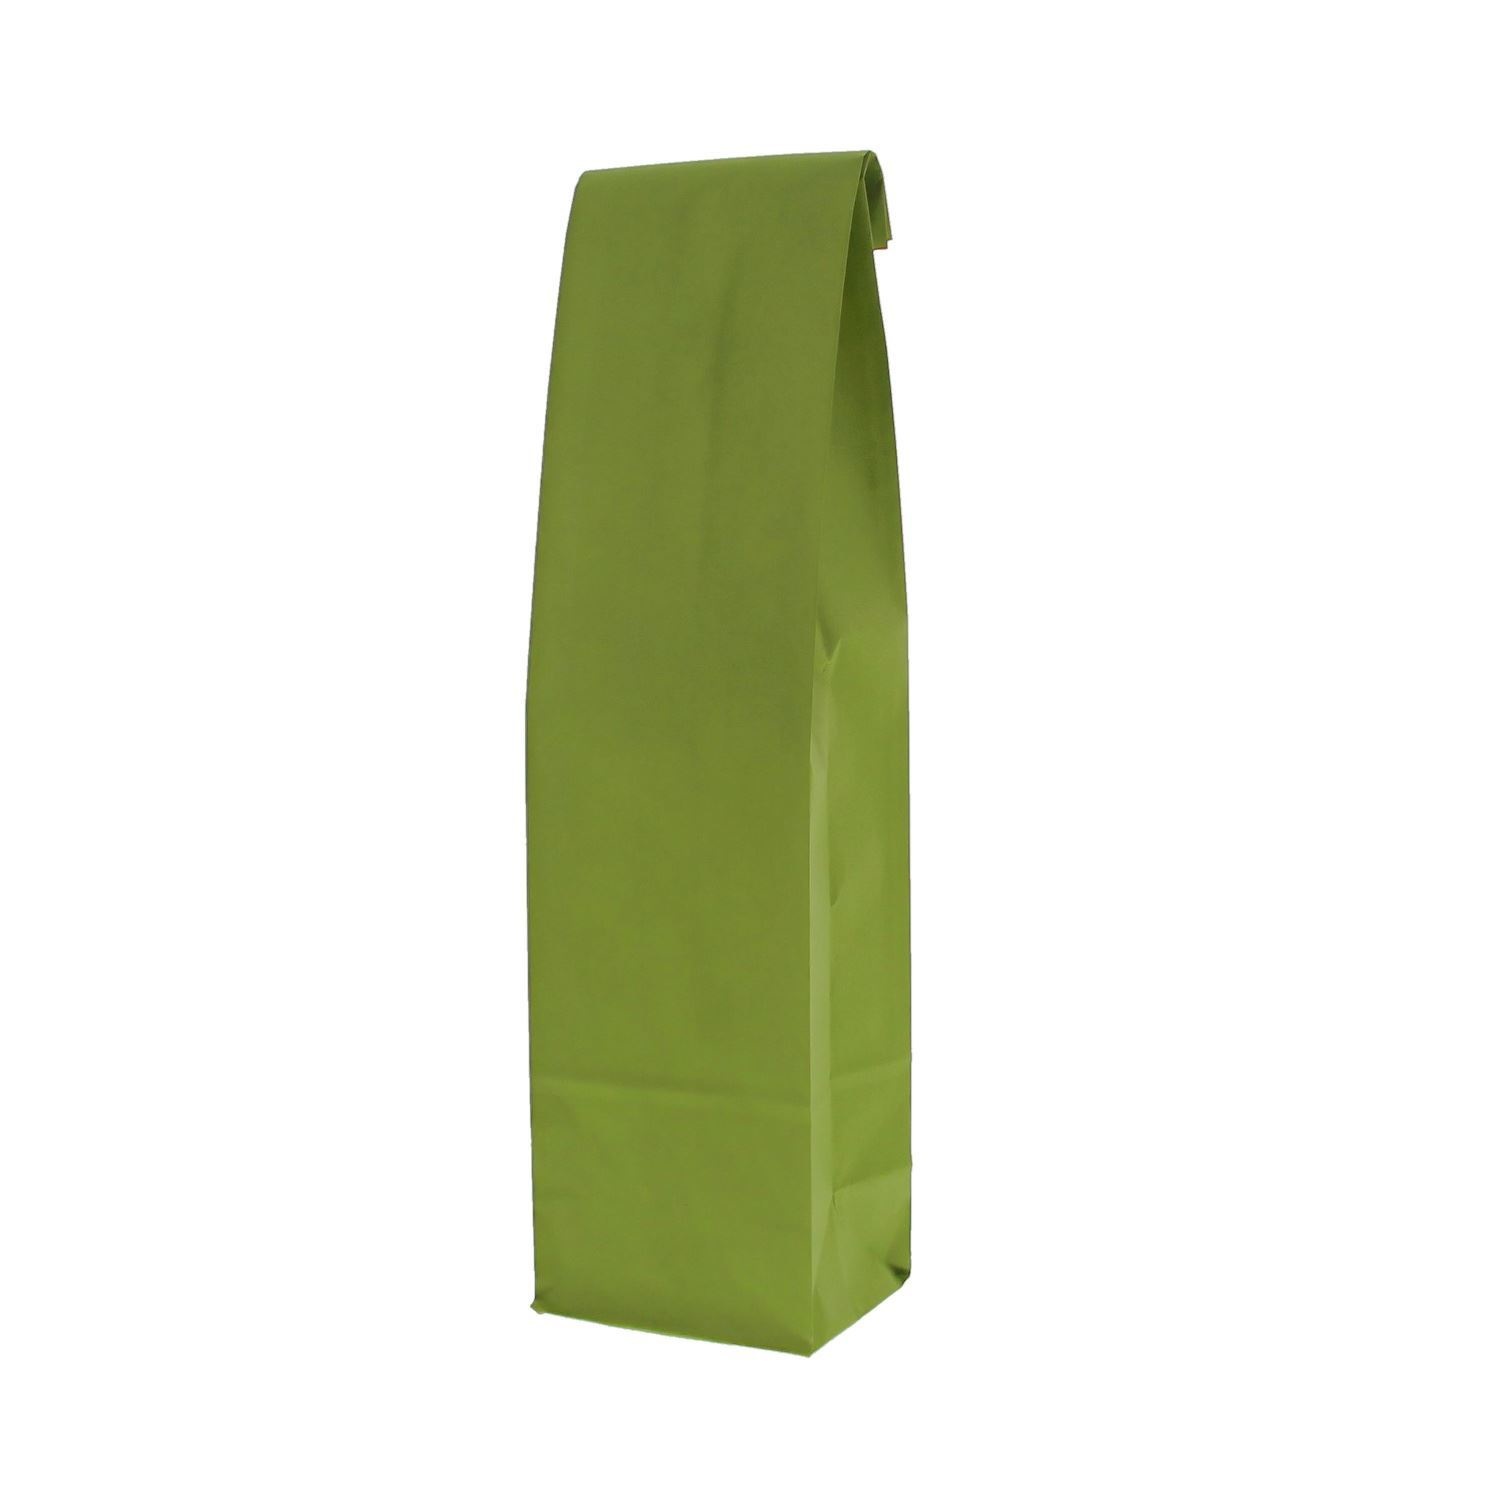 Papieren fleszak met bodem groen -100*80*410mm - 50 stuks